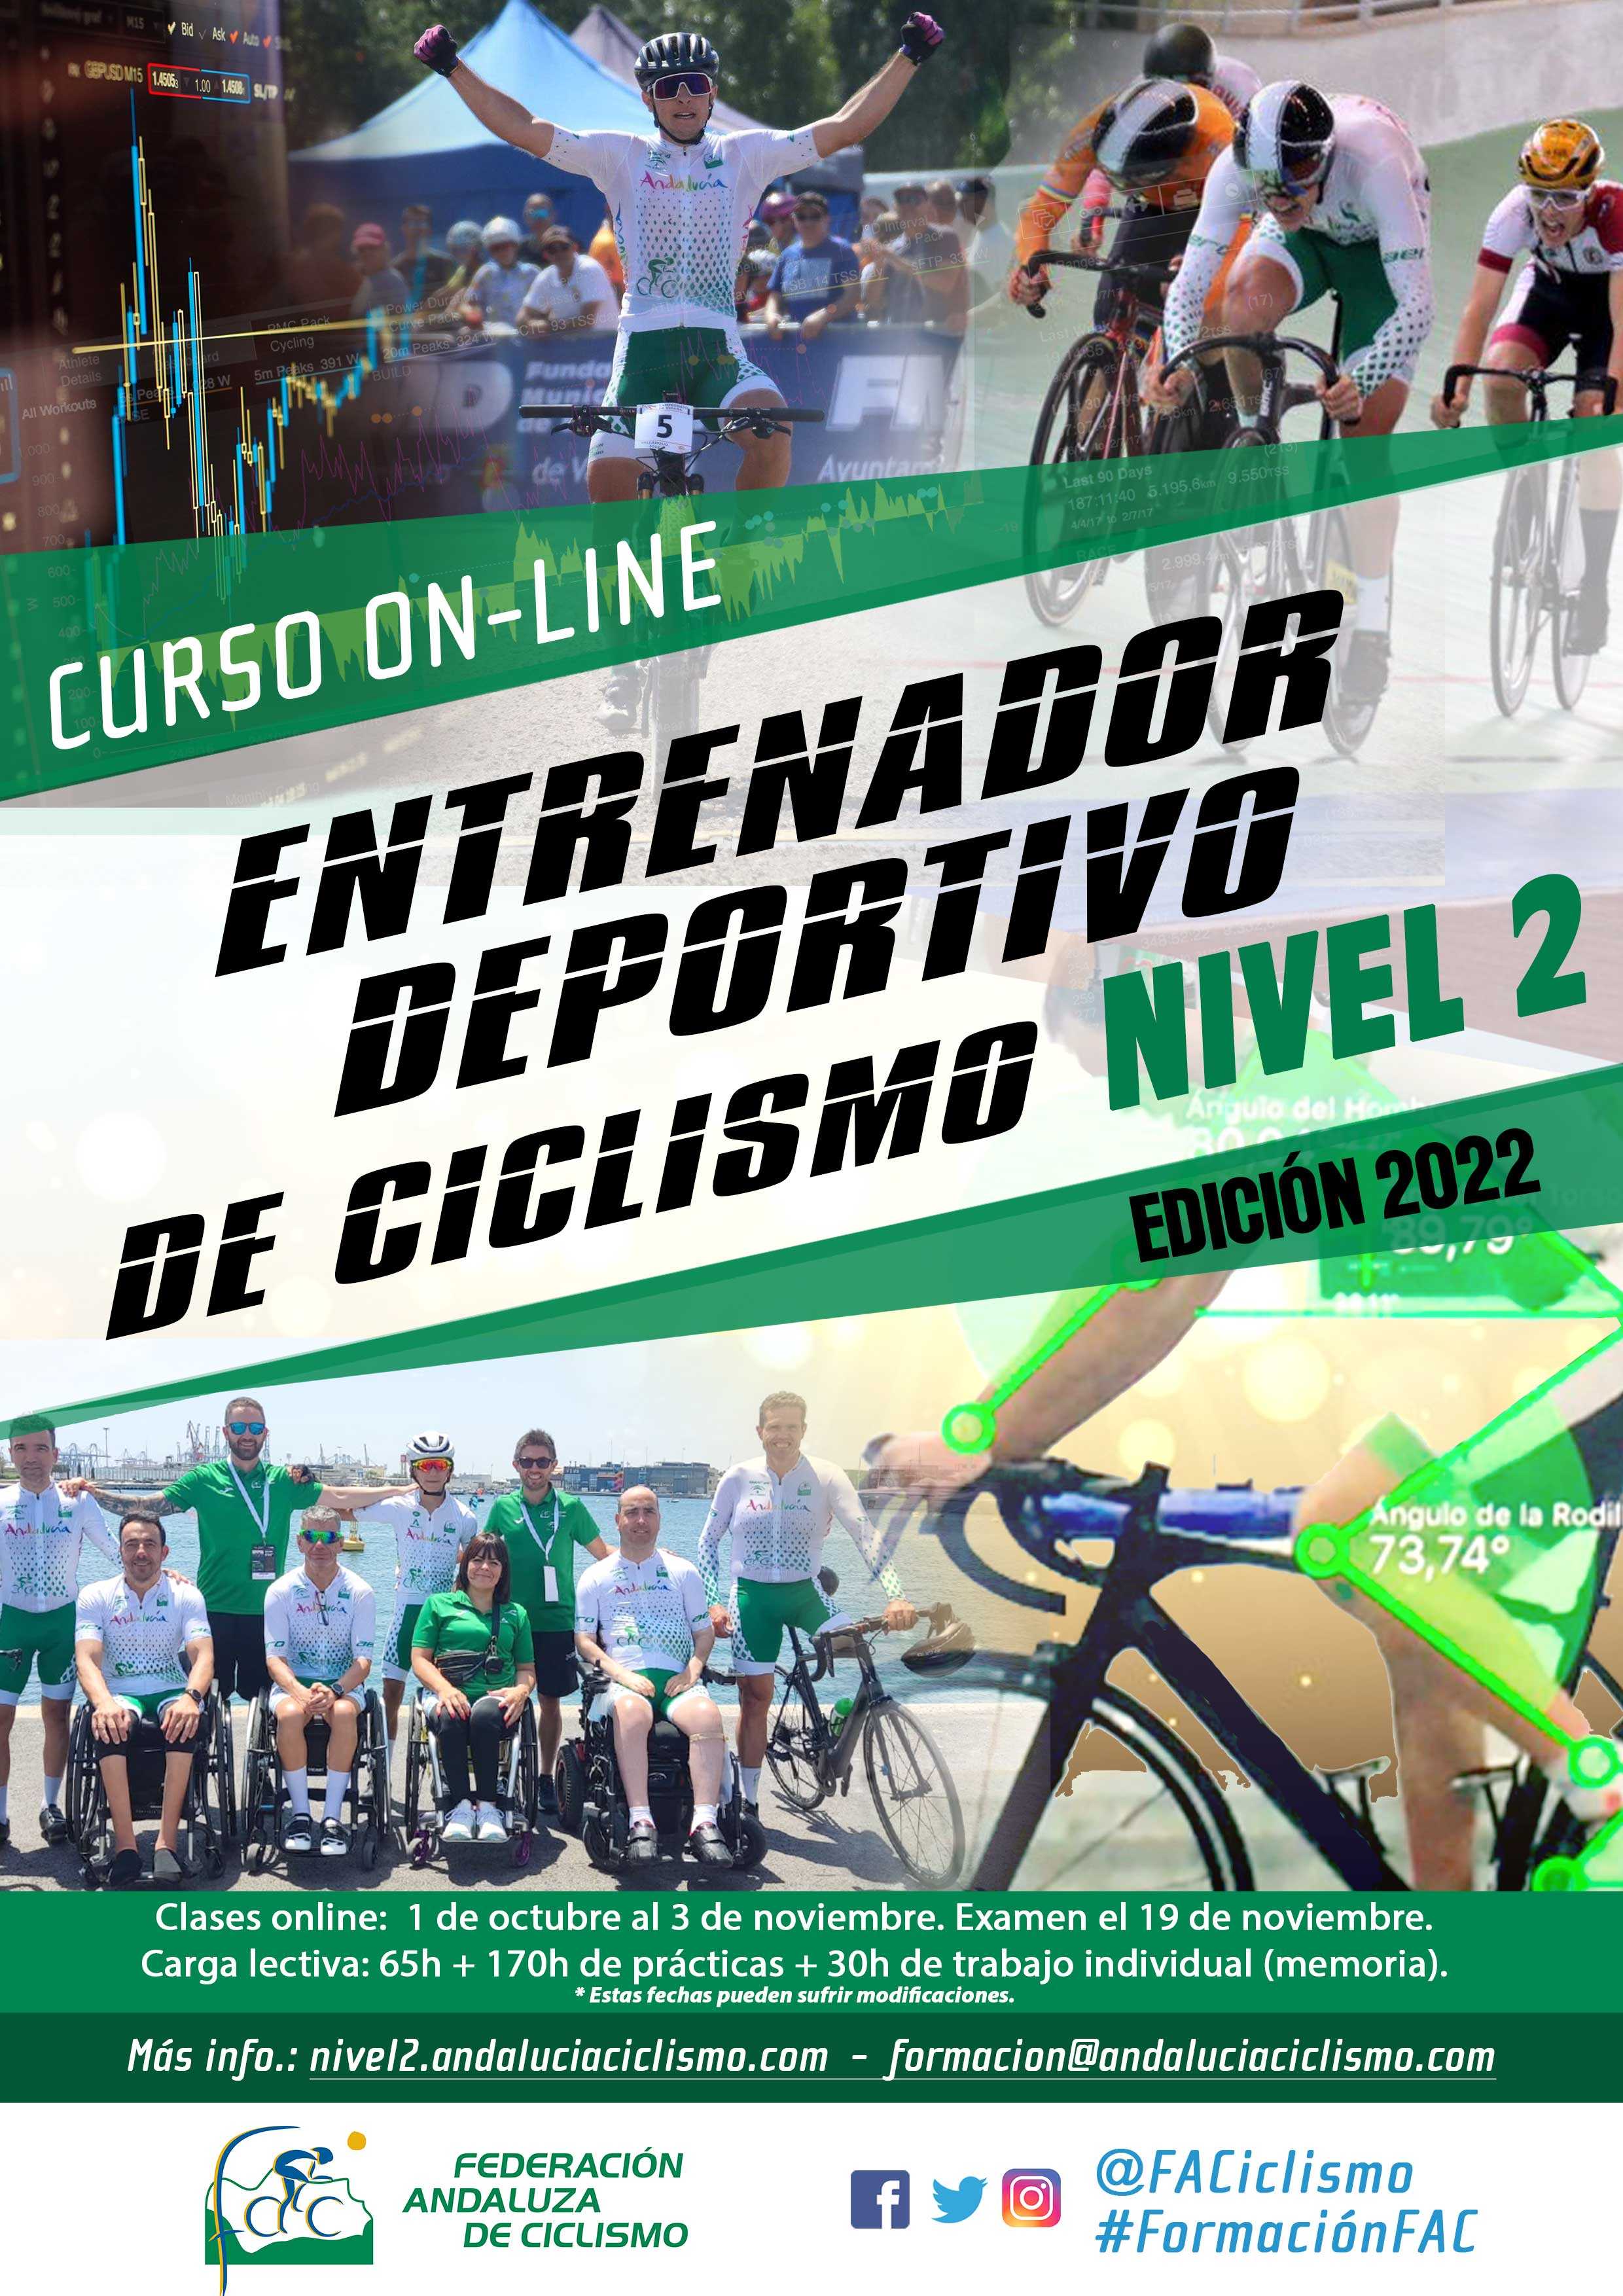 Abierta convocatoria para el Curso Online de Entrenador Deportivo de Ciclismo Nivel 2 edición 2022